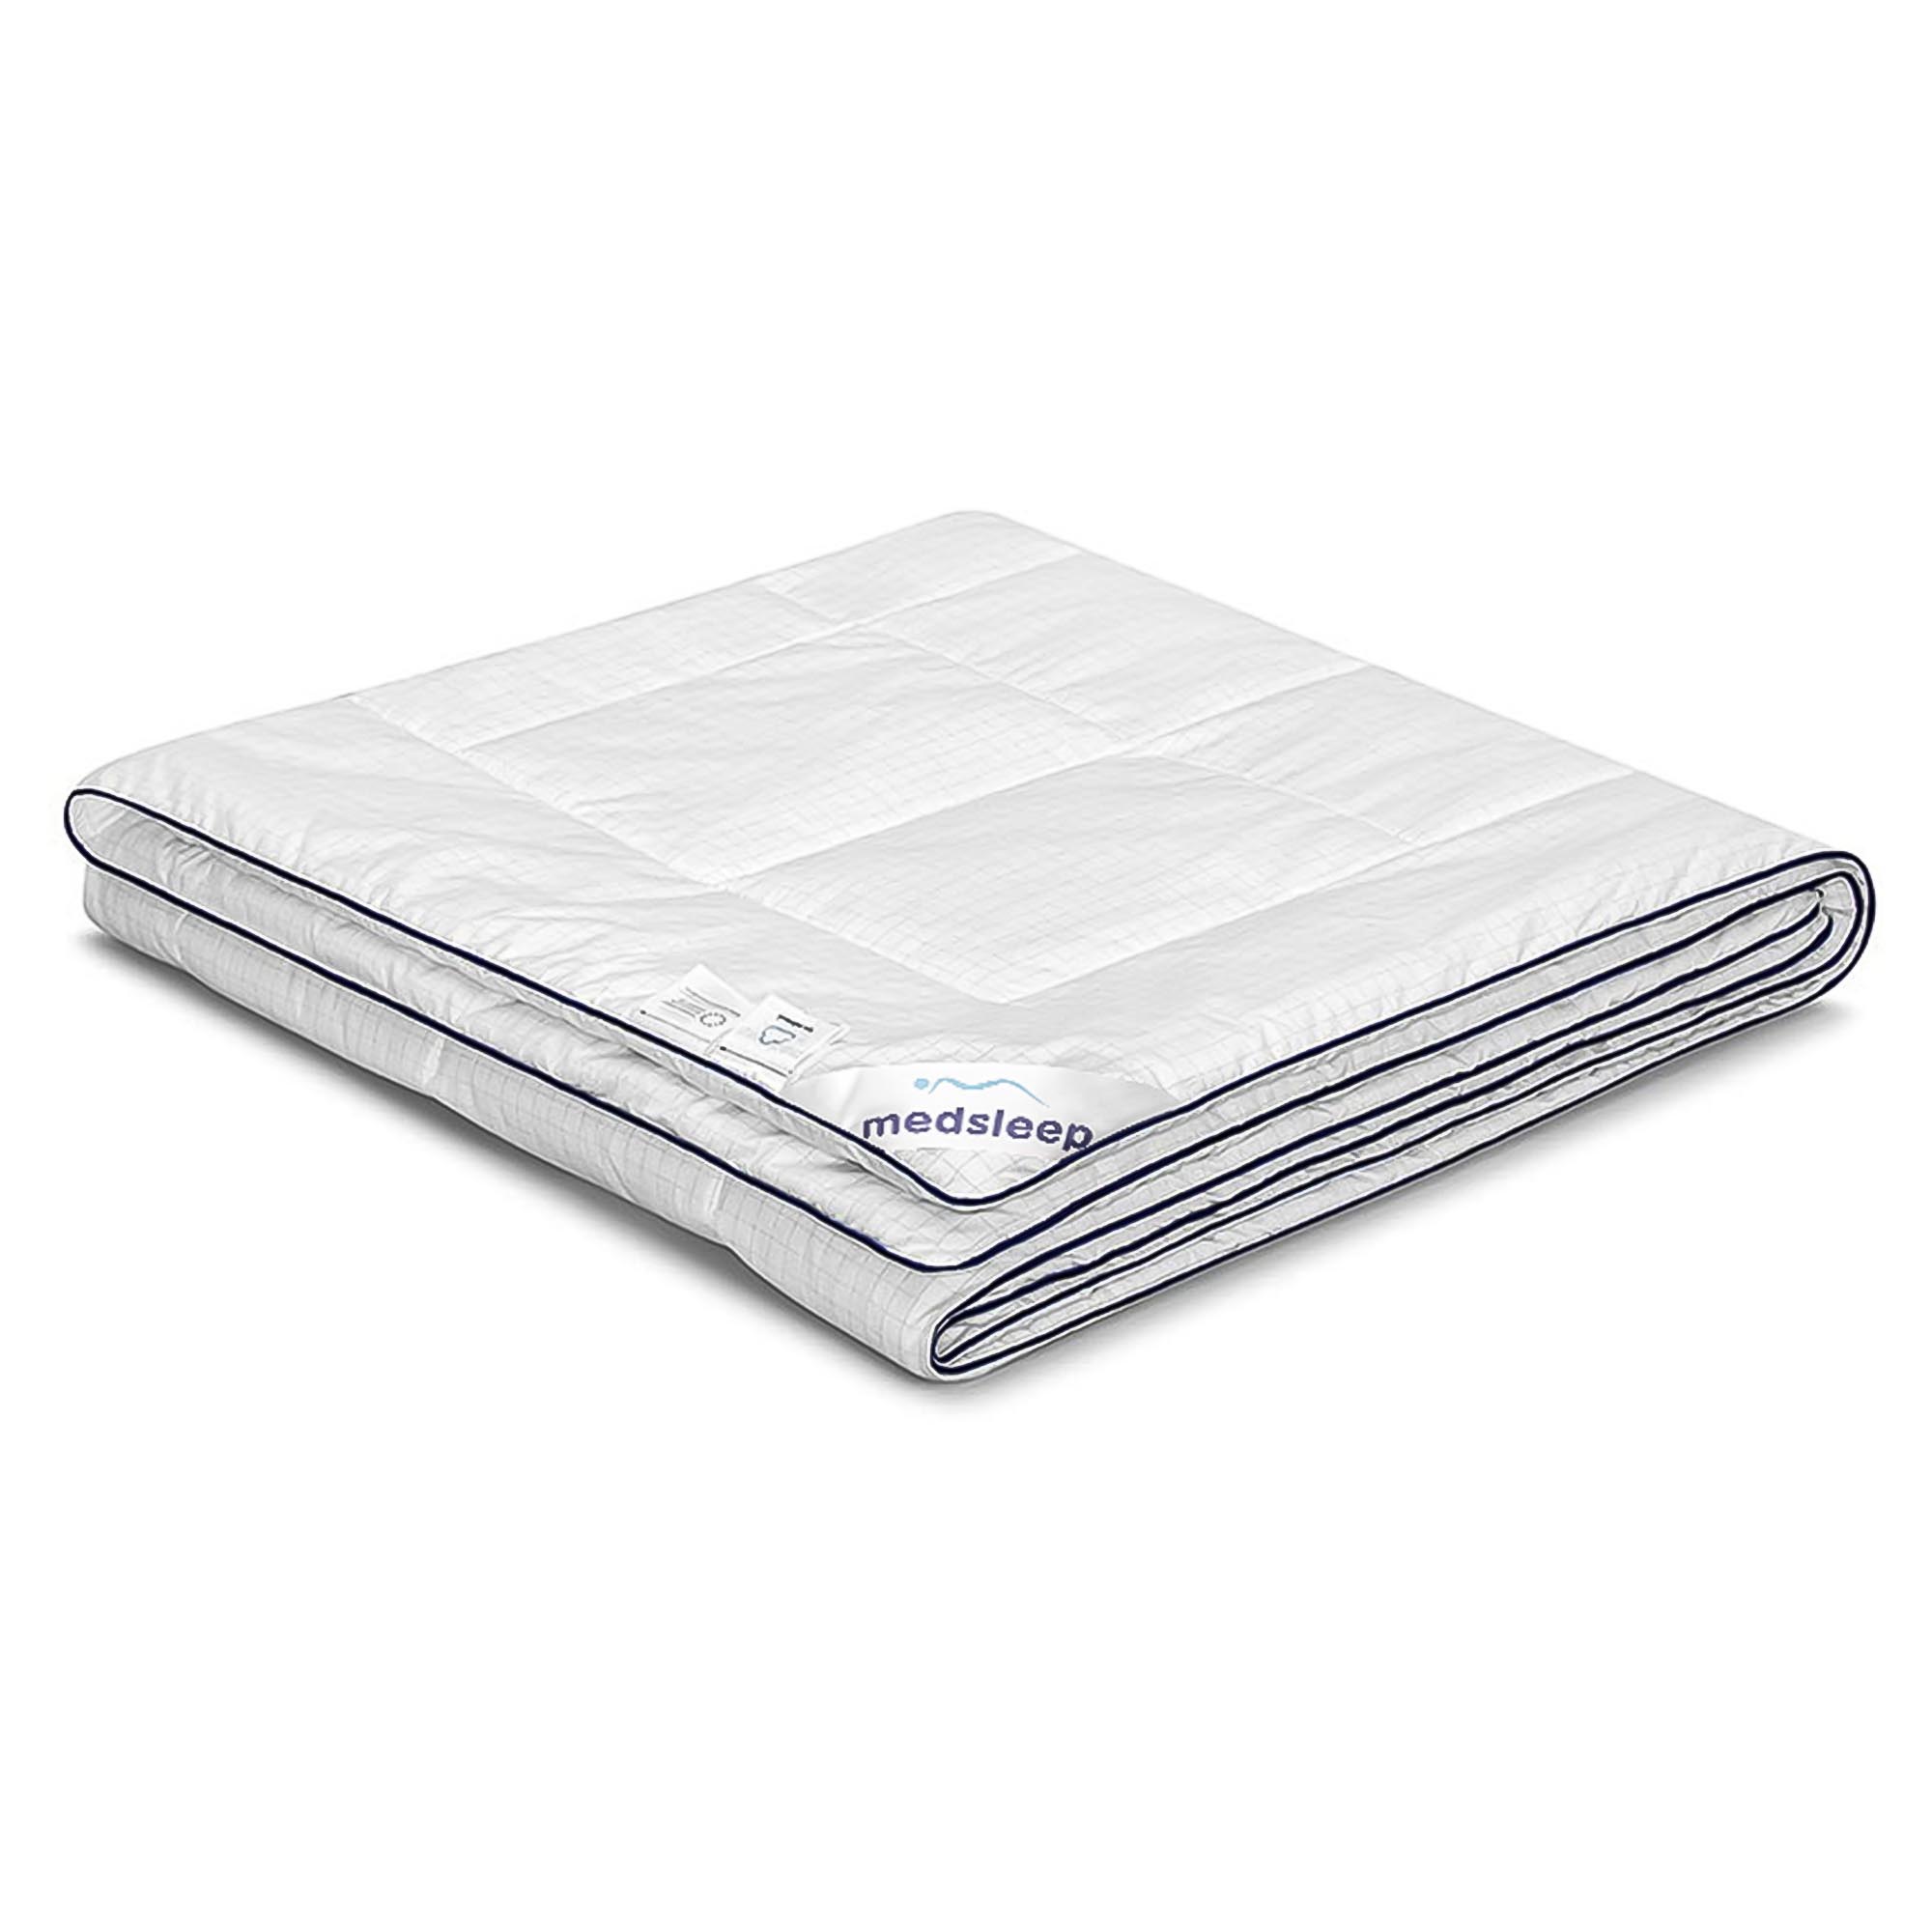 Одеяло Medsleep Nubi белое 175х200 см одеяло лебяжий пух premium р 140х205